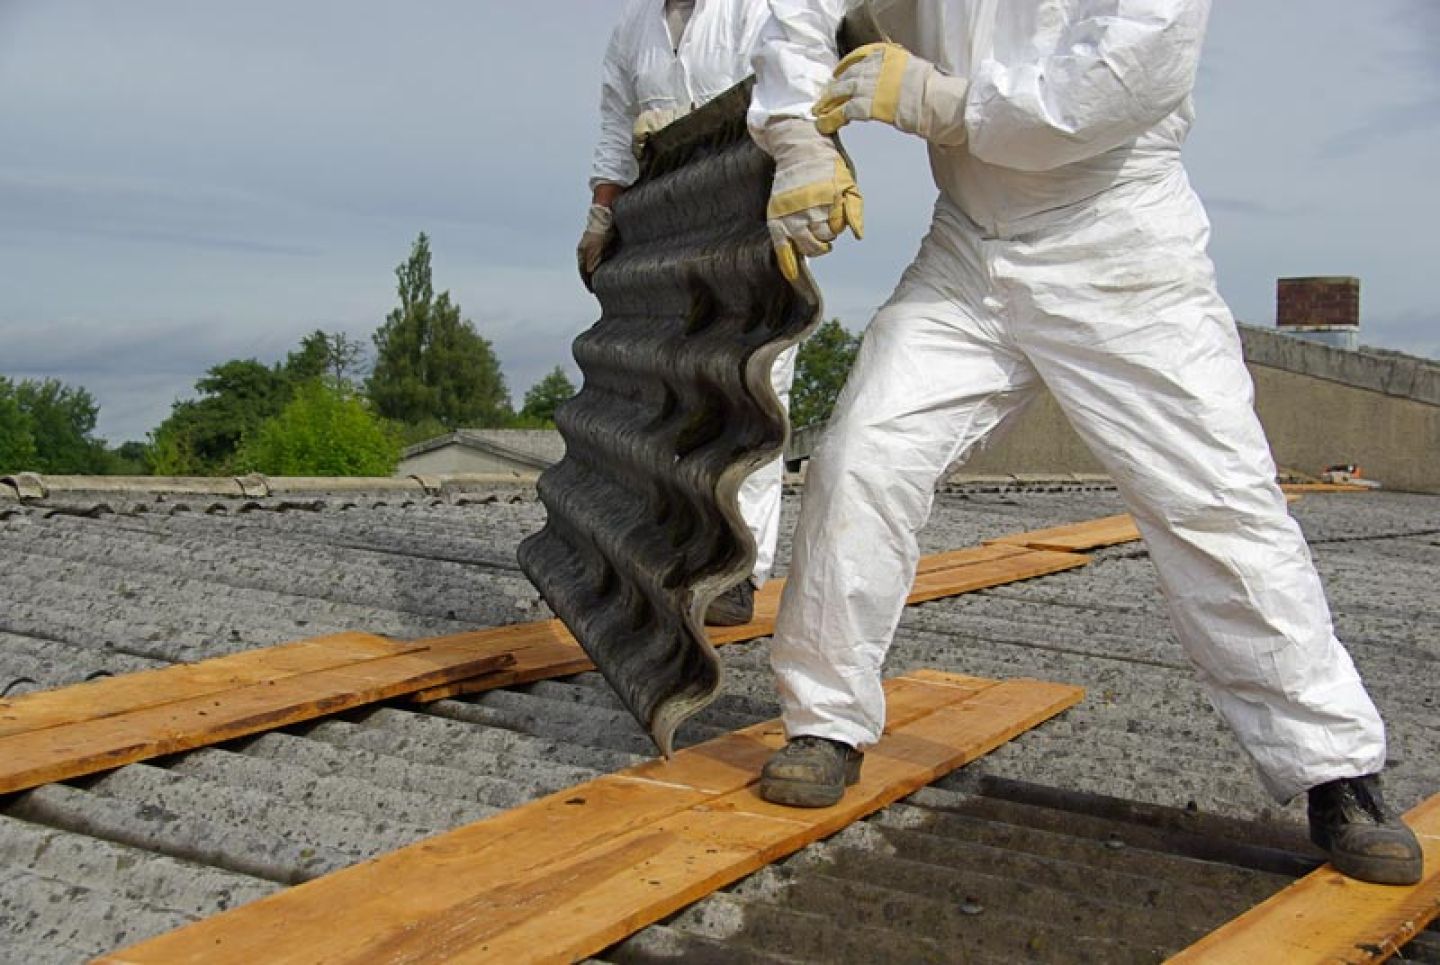 Twee werknemers dragen persoonlijke beschermingsmiddelen tijdens werkzaamheden met asbest